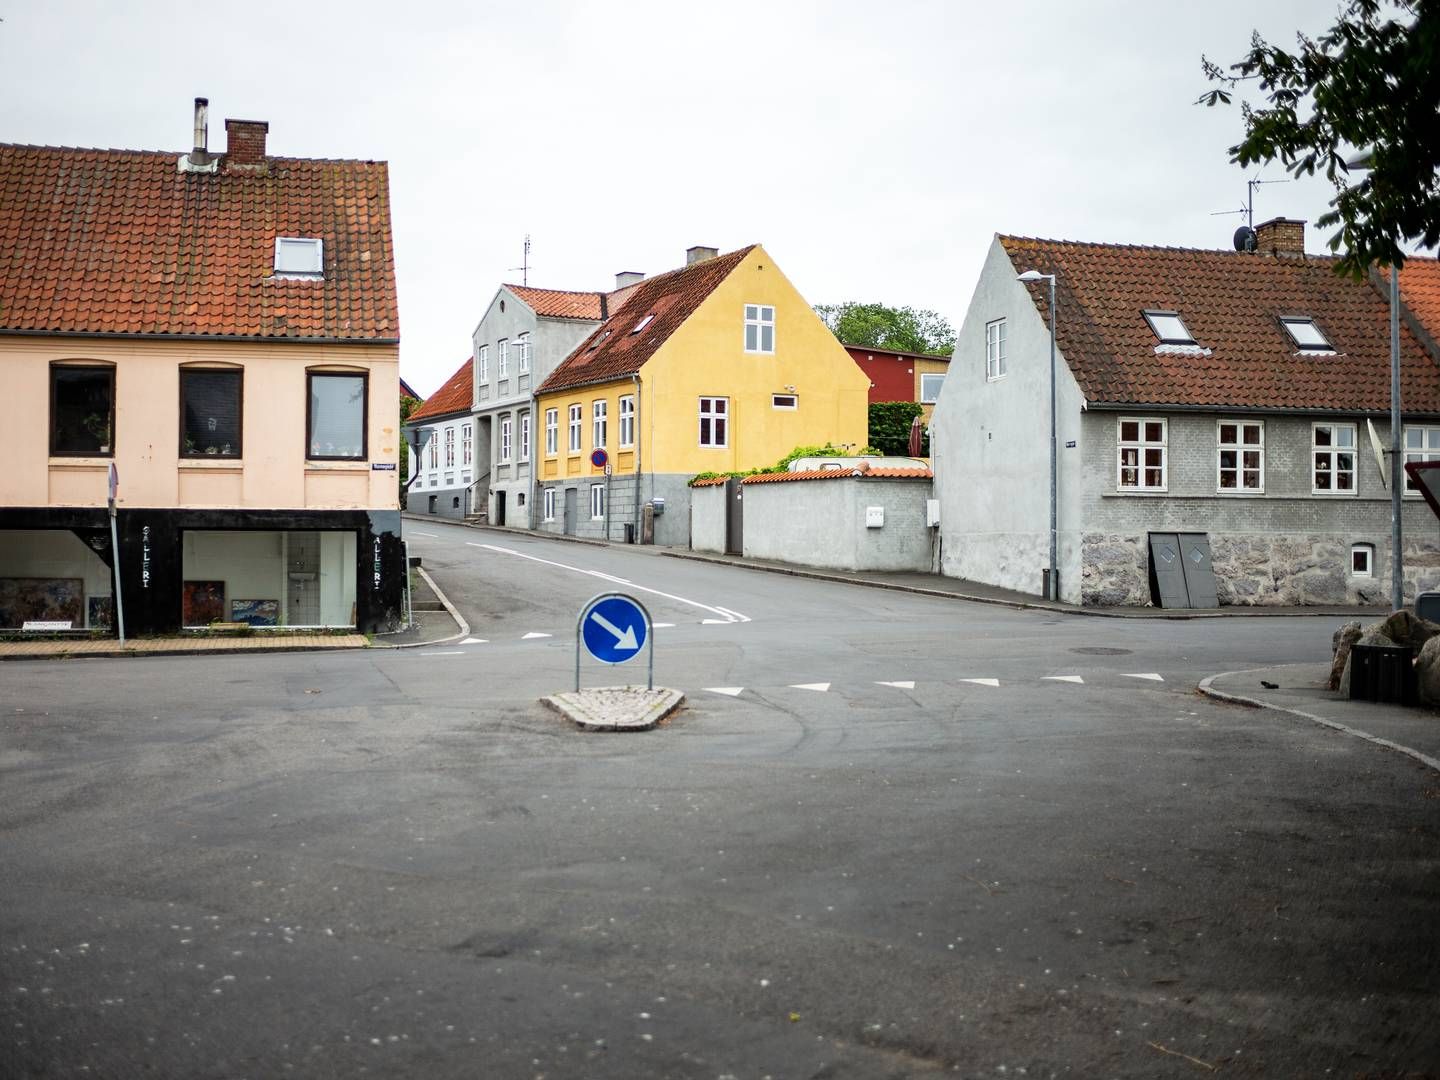 Grønbechs Hotel ligger her i Allinge på det nordlige Bornholm. | Foto: Rasmus Flindt Pedersen